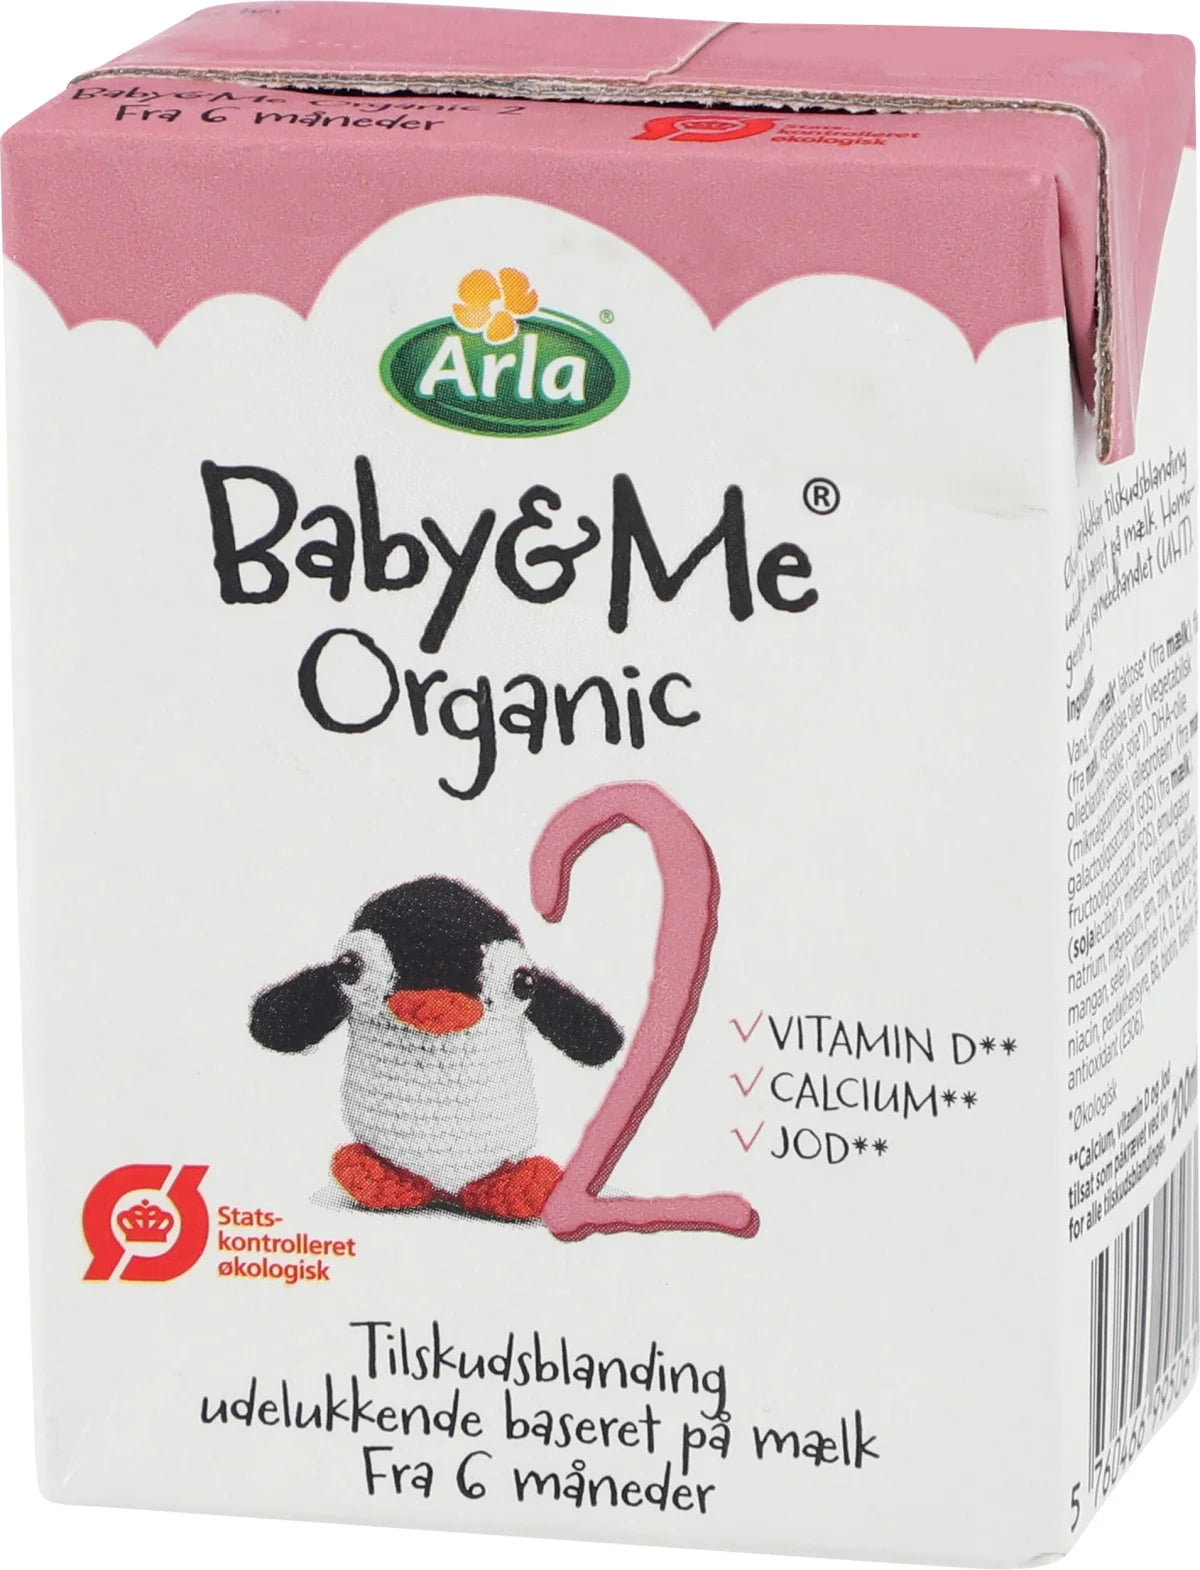 Billede af Arla Baby&Me Organic - Baby & Me 2 drikkeklar 200ml